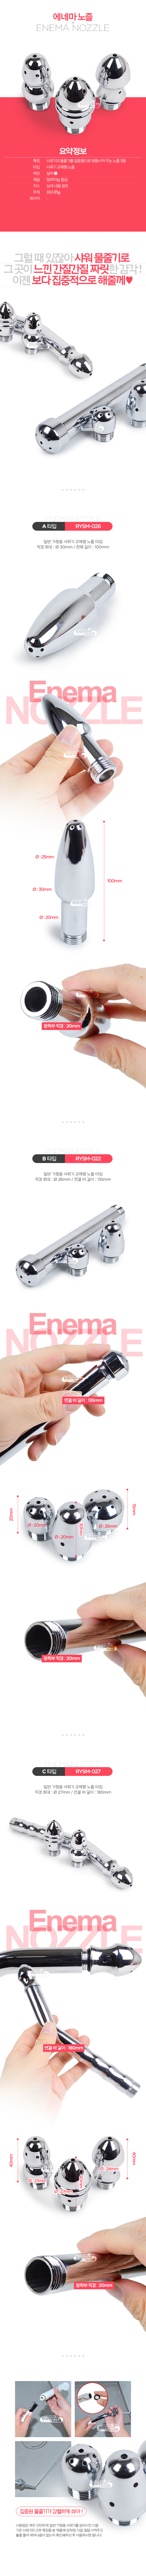 [애널 세척기] 에네마 노즐(Enema Nozzle) - 메탈템테이션(RYSM-022) (MTS)